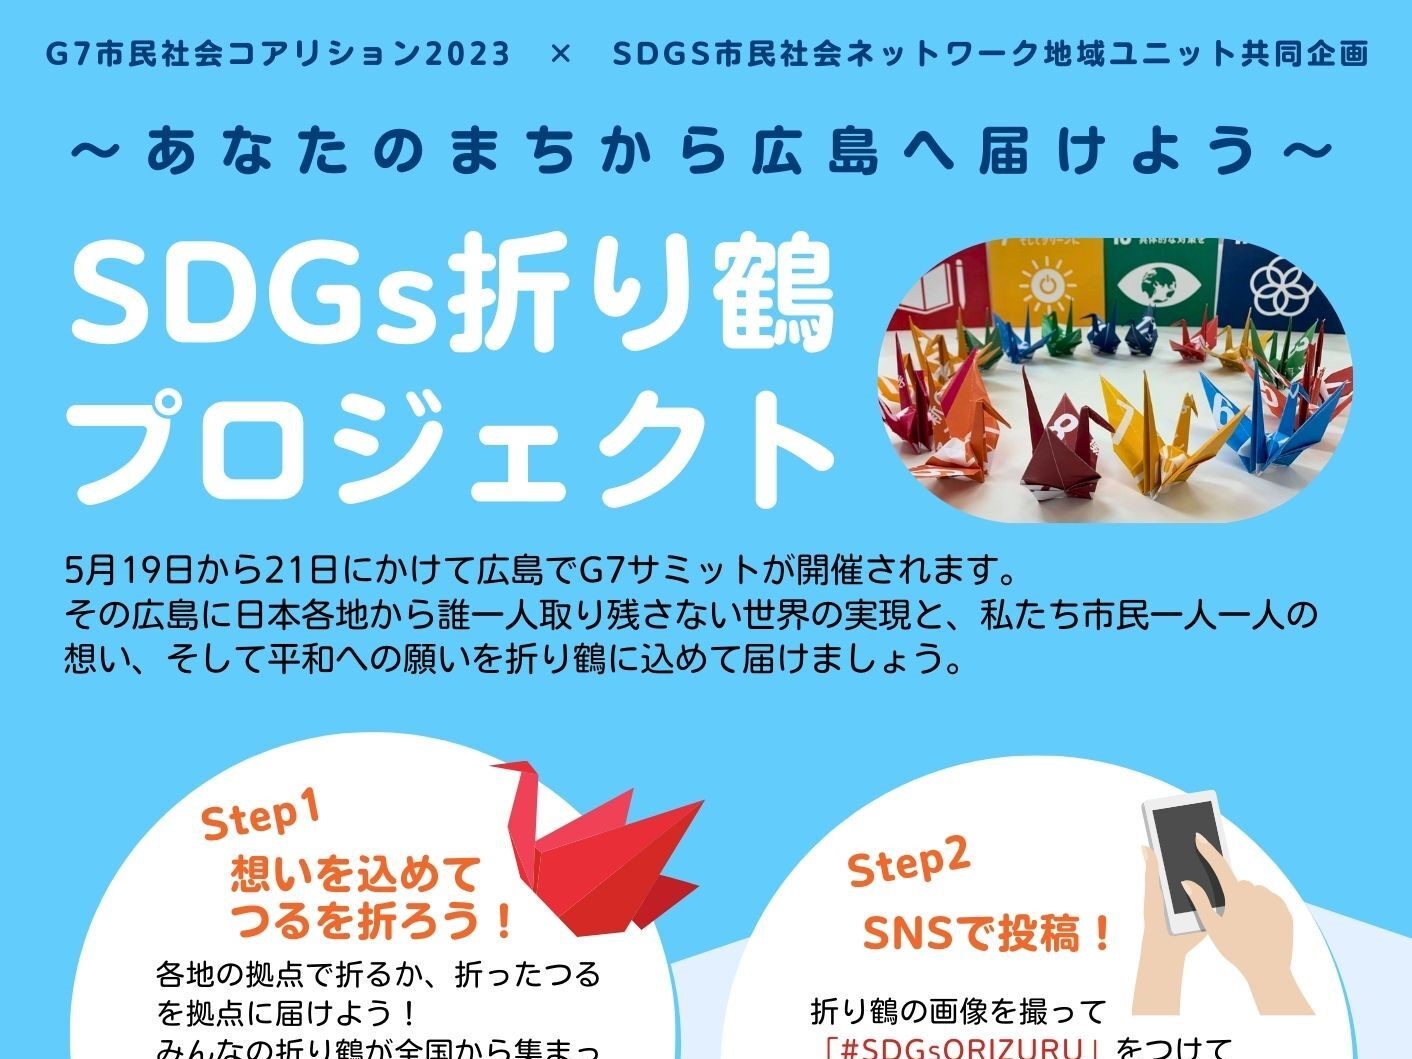 ～4/13 関西NGO協議会はSDGs折り鶴プロジェクトの拠点です